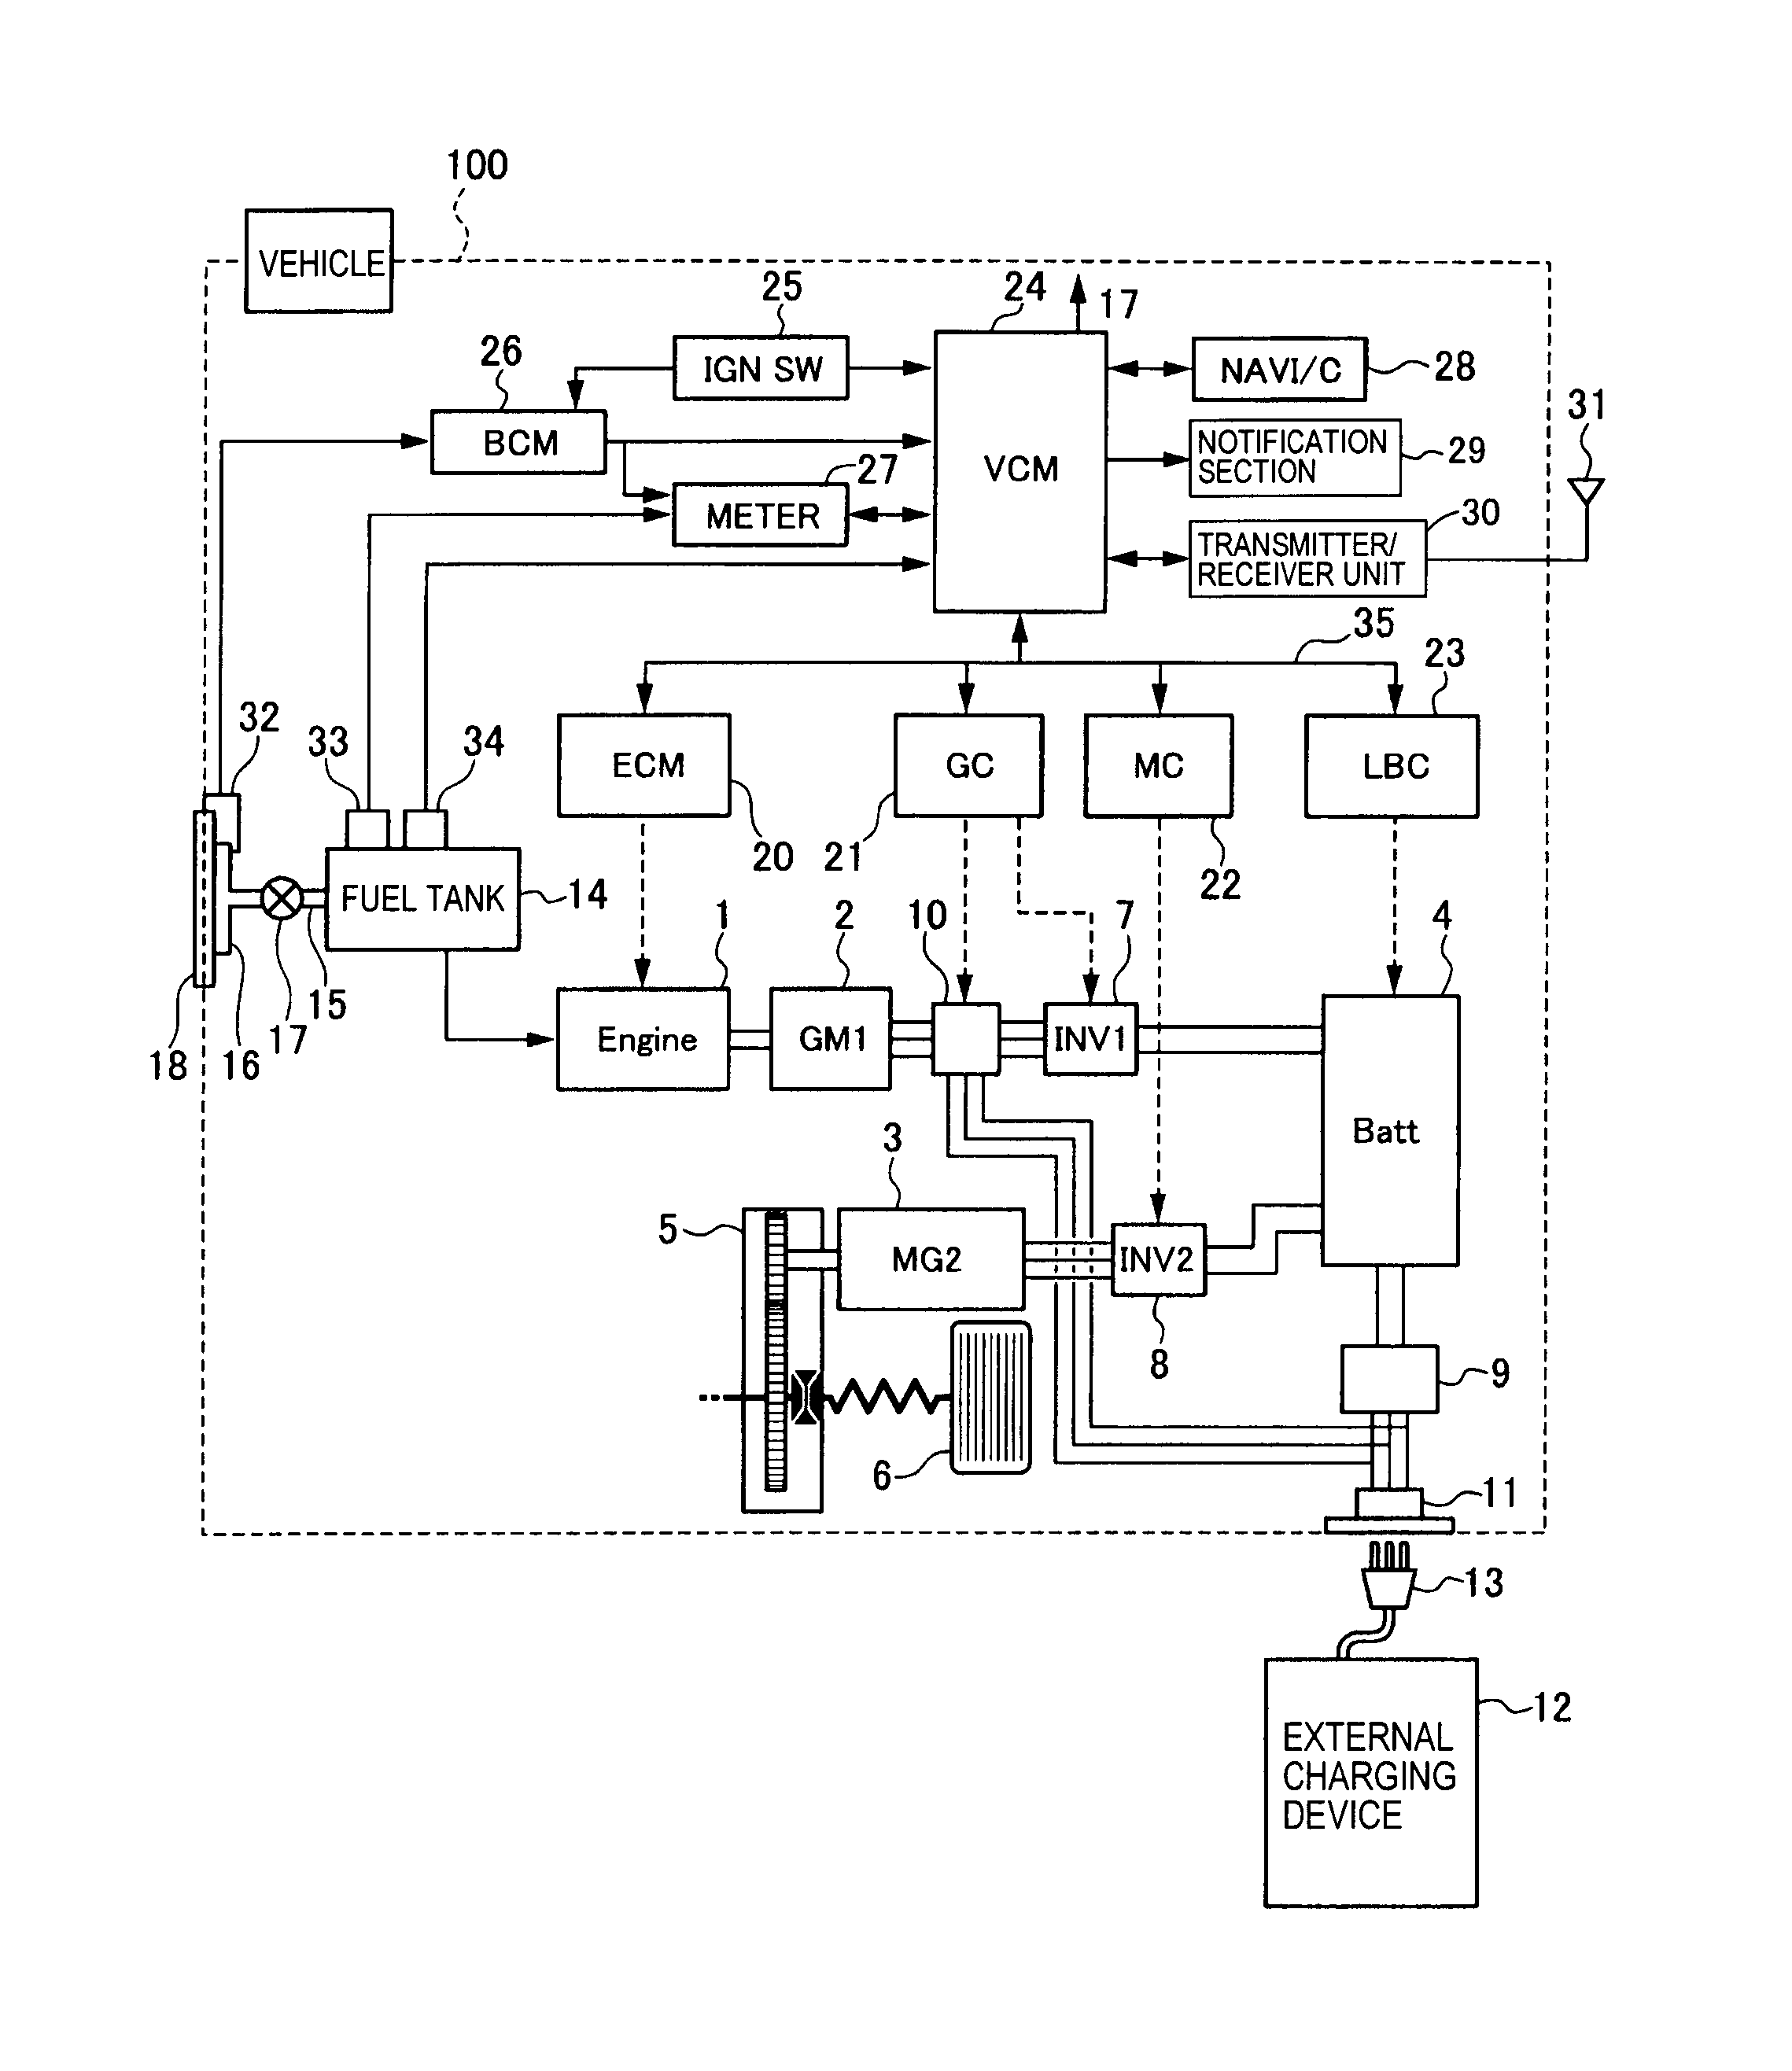 pmdx-126 wiring diagram autocad